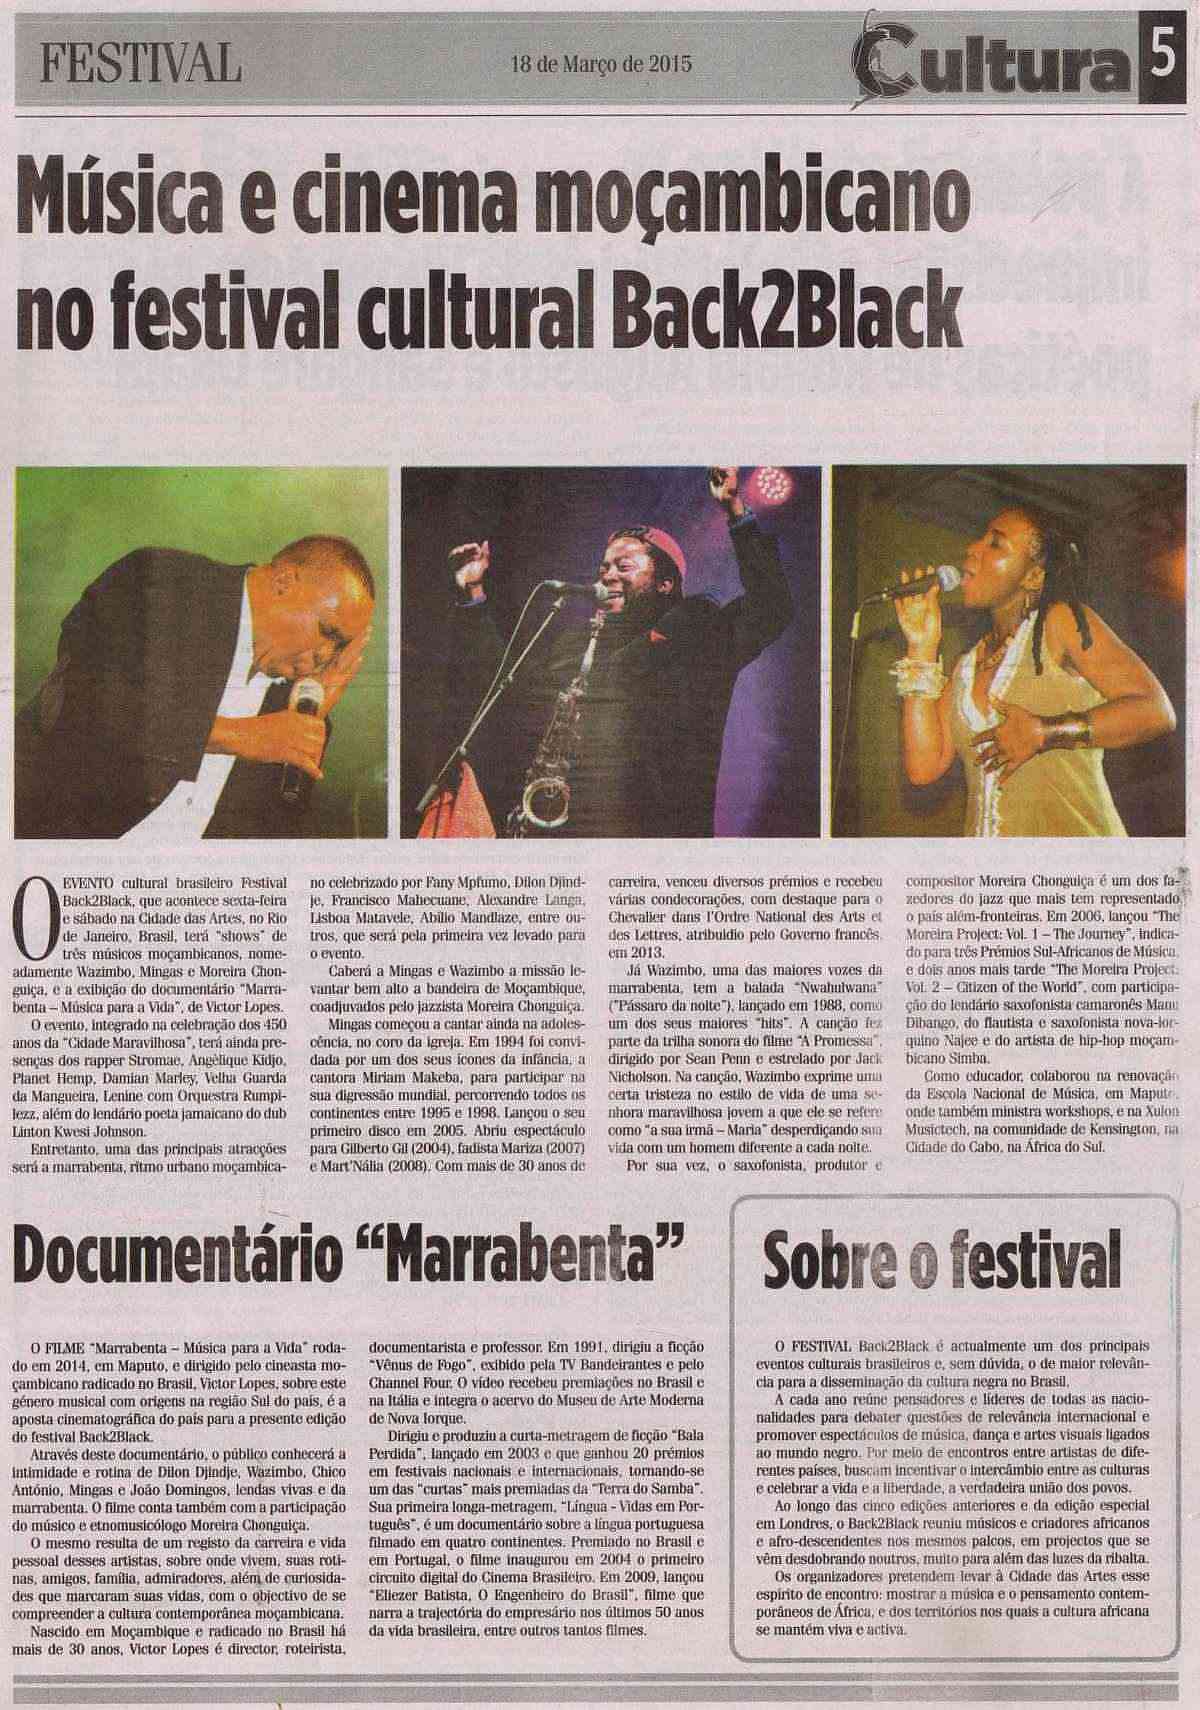 'Noticias - Cultura', March 18, 2015, Page 5: Back2Black Festival in Rio de Janeiro, Brazil, March 21, 2015